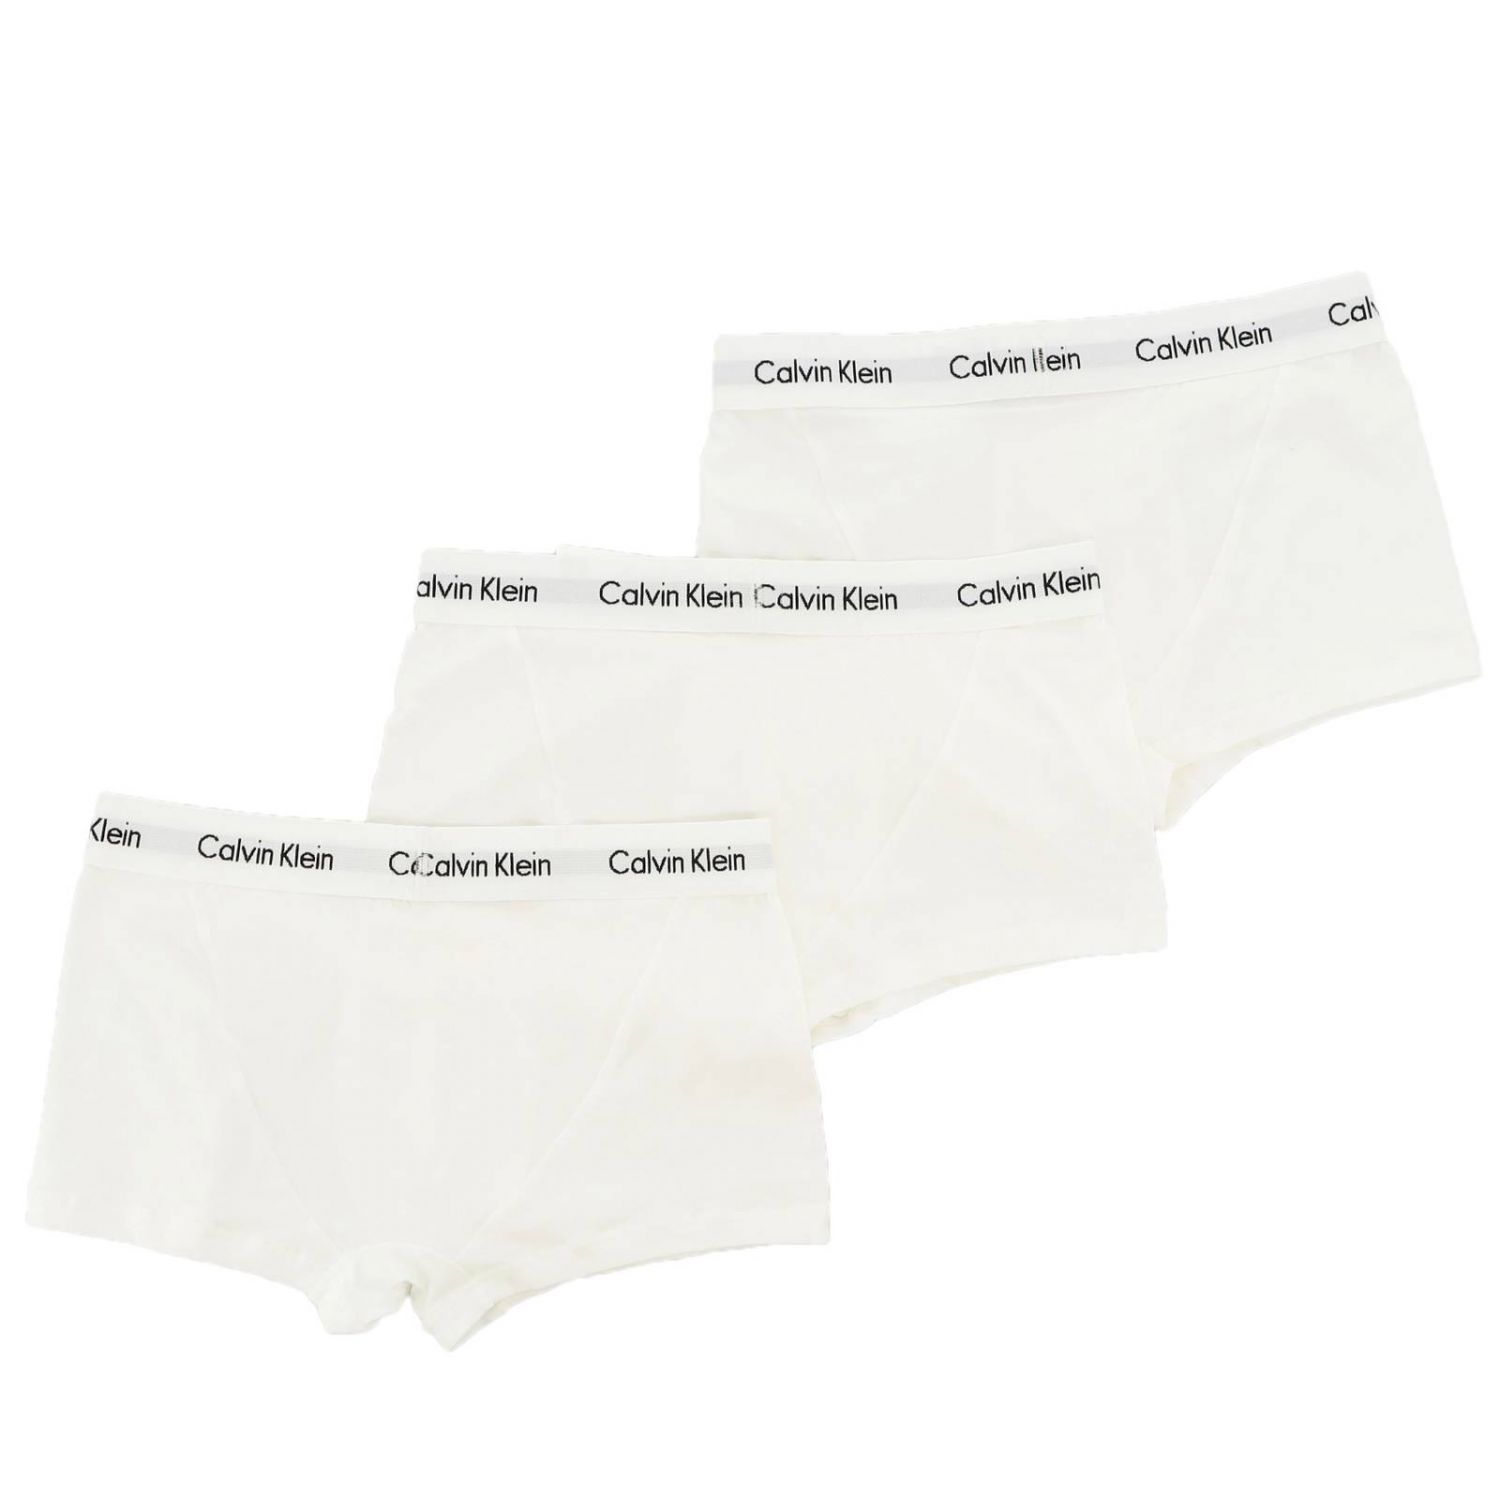 Calvin Klein Underwear Outlet: Set 3 basic boxer briefs with logo